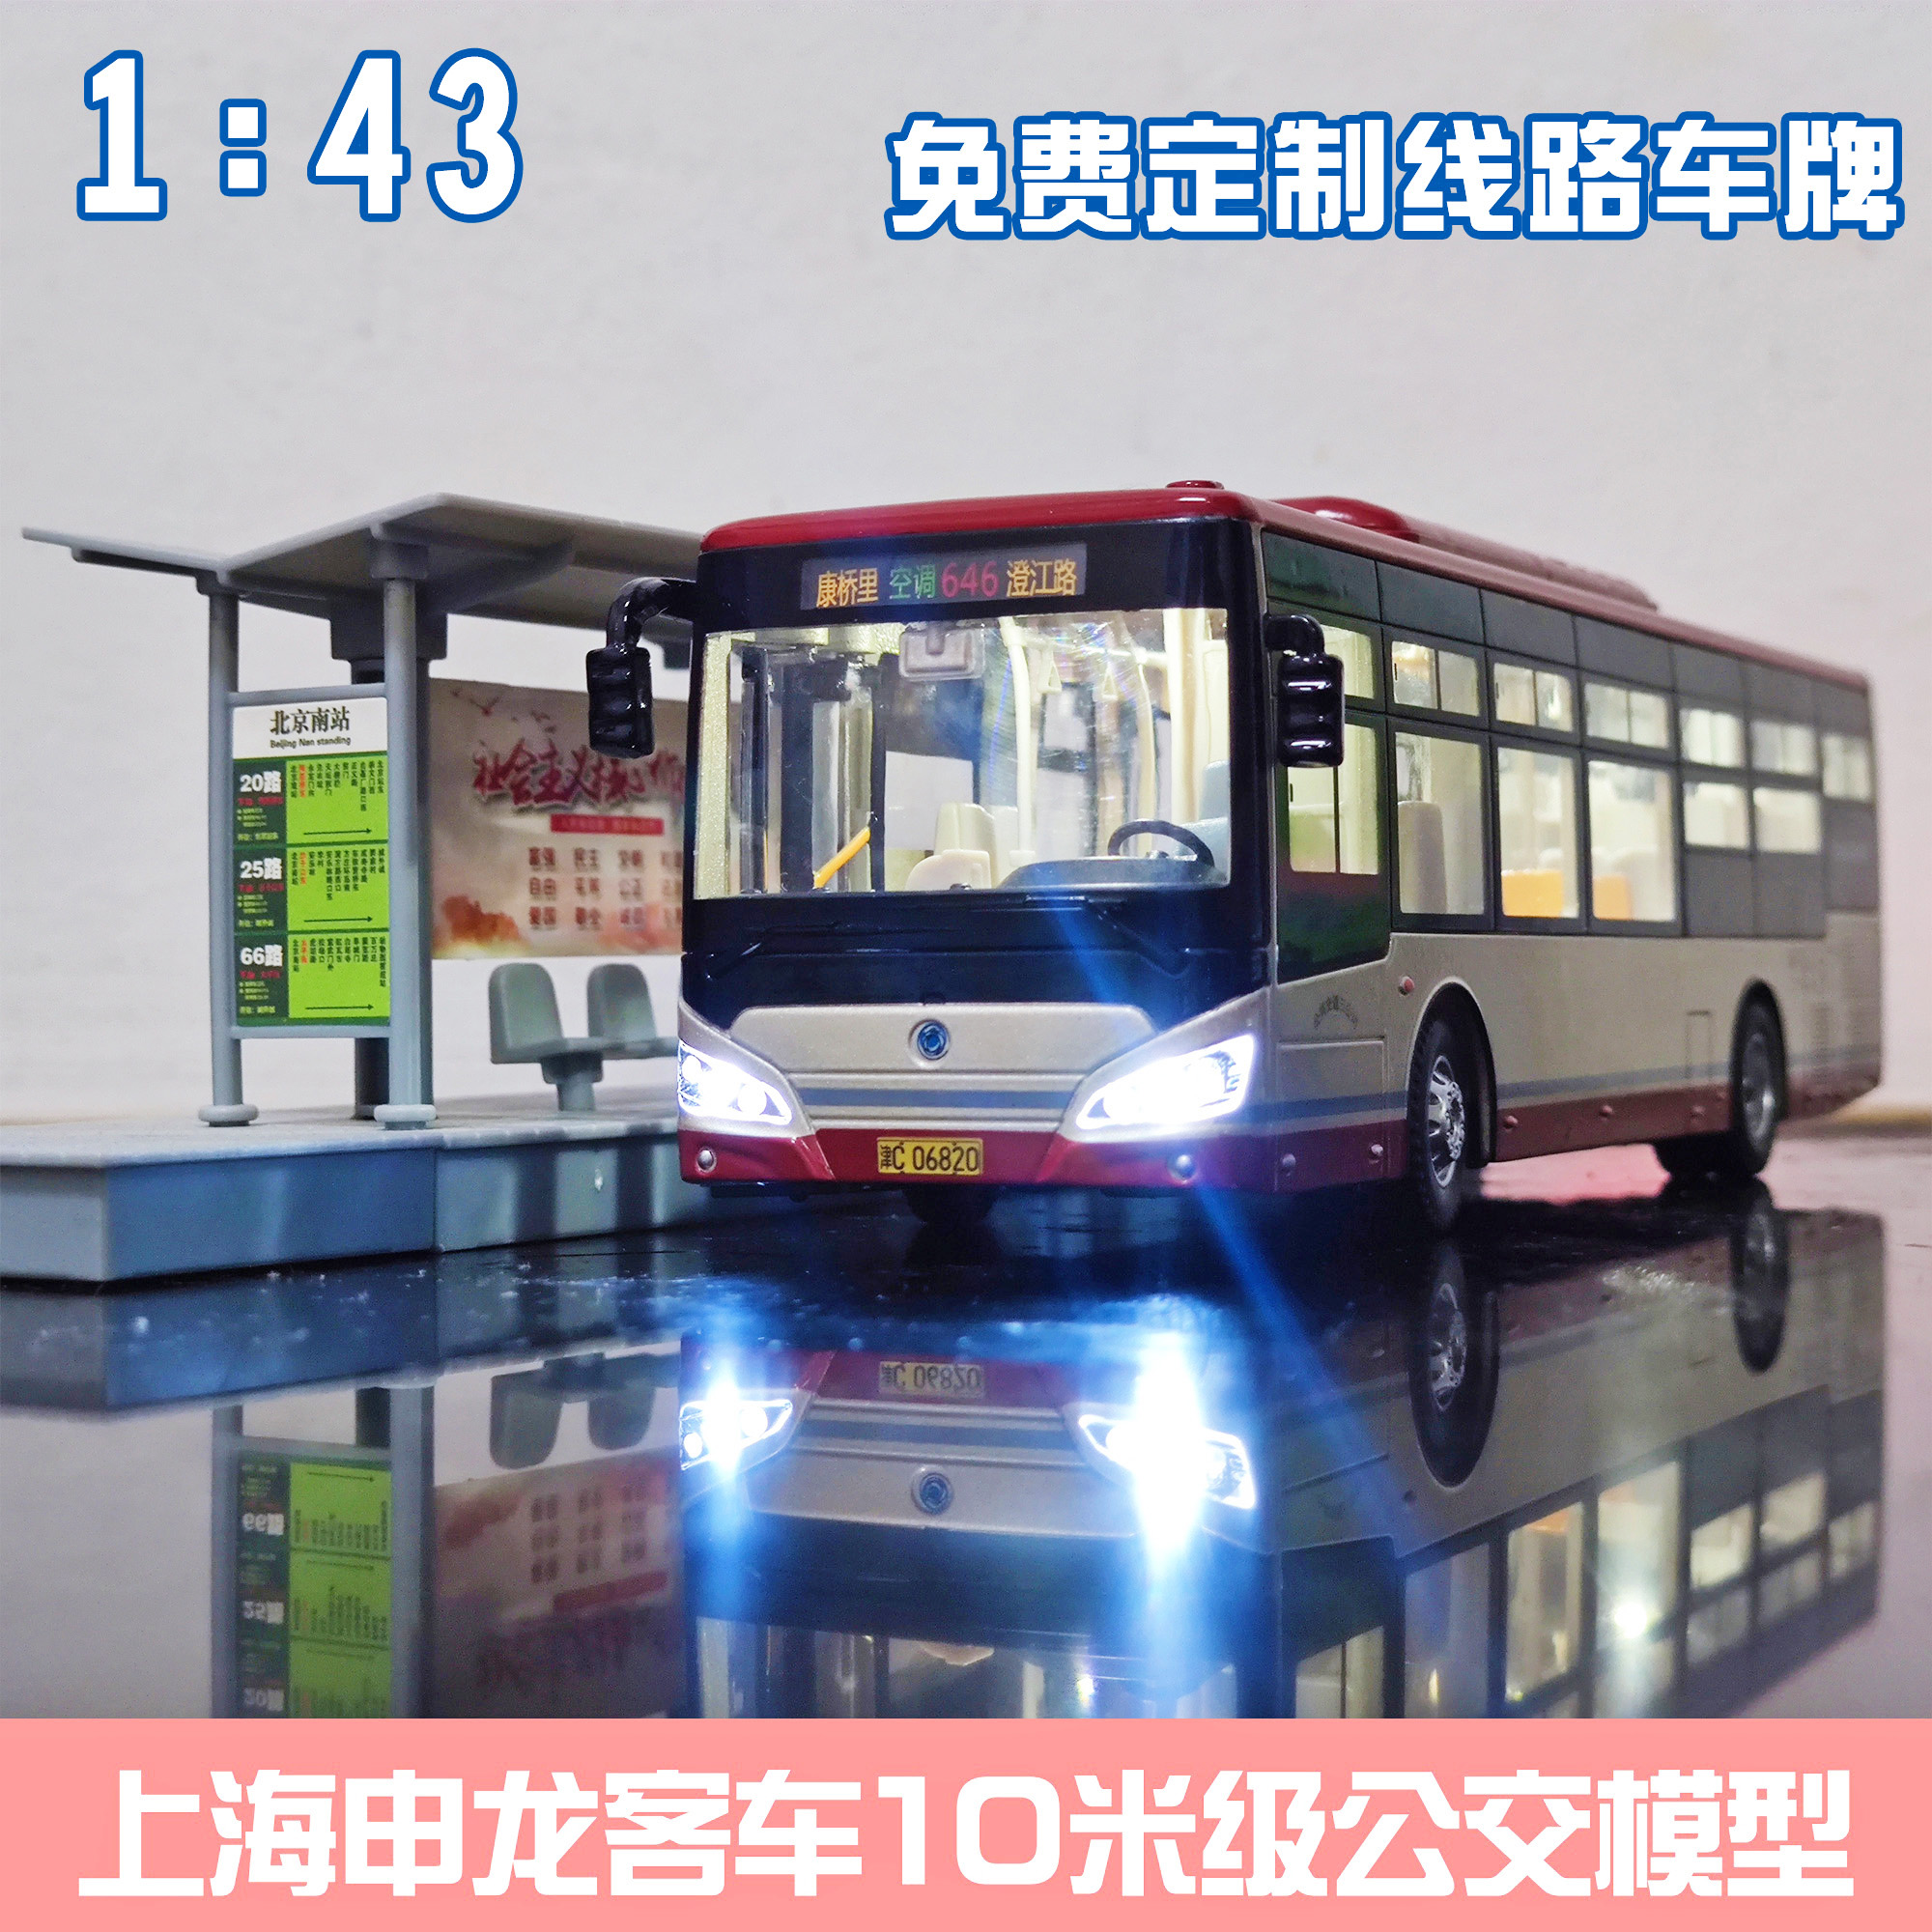 正品1:43 北京公交模型 福田客车双层巴士祥云蓝北电大公交车玩具